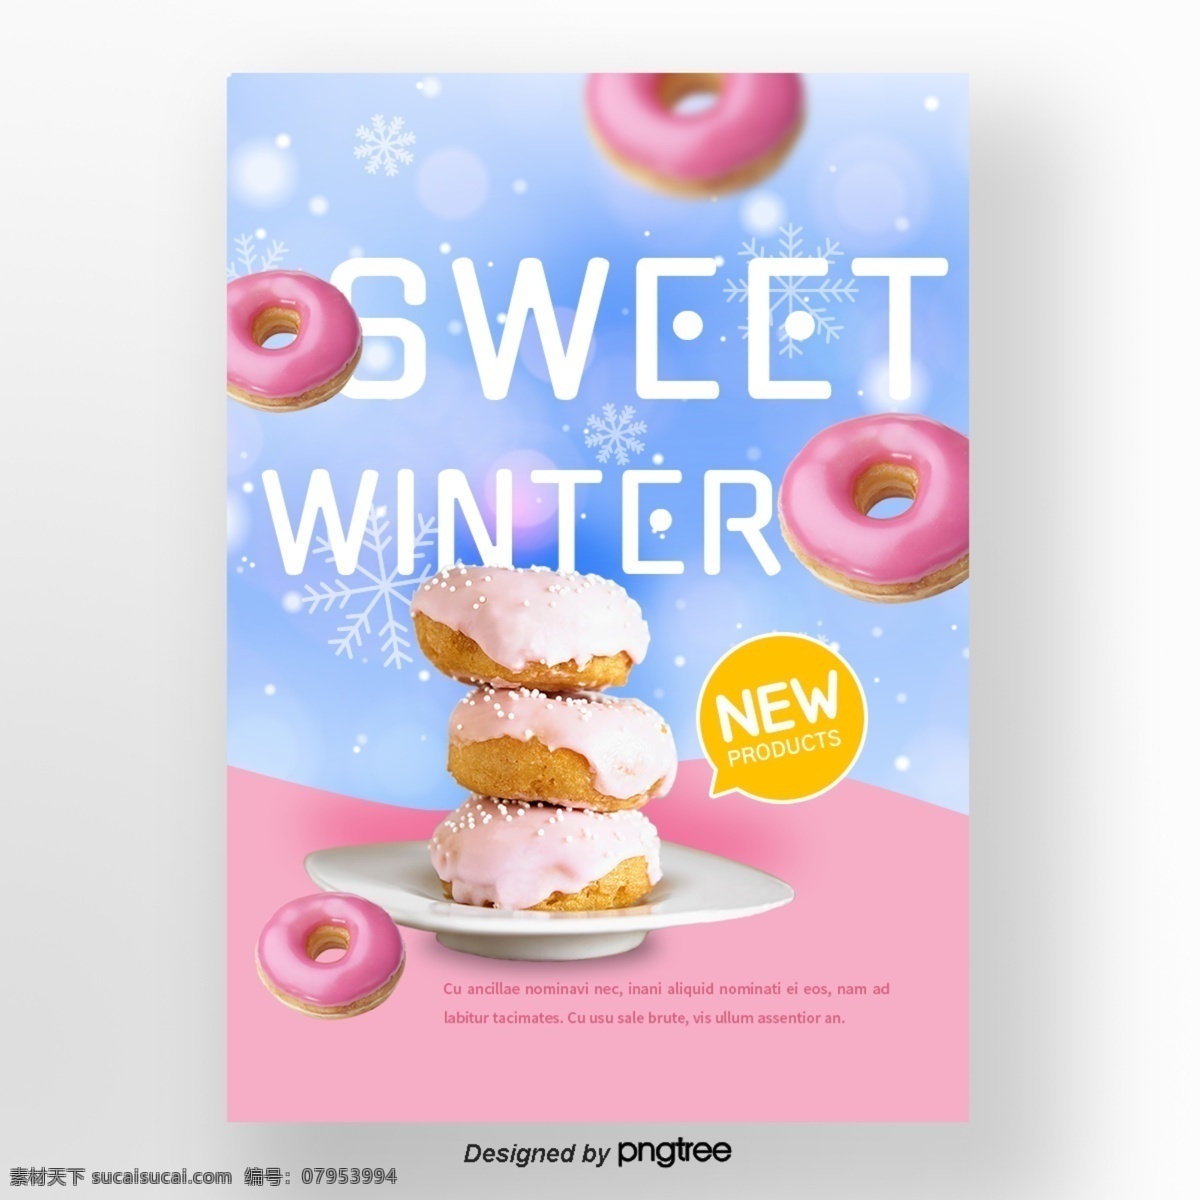 粉红色 宽 蓝色 逐渐 变更 背景 雪花 冬天 甜味 食品 海报 n 雪花儿 甜食 甜甜圈 逐渐变更 颜色粉色